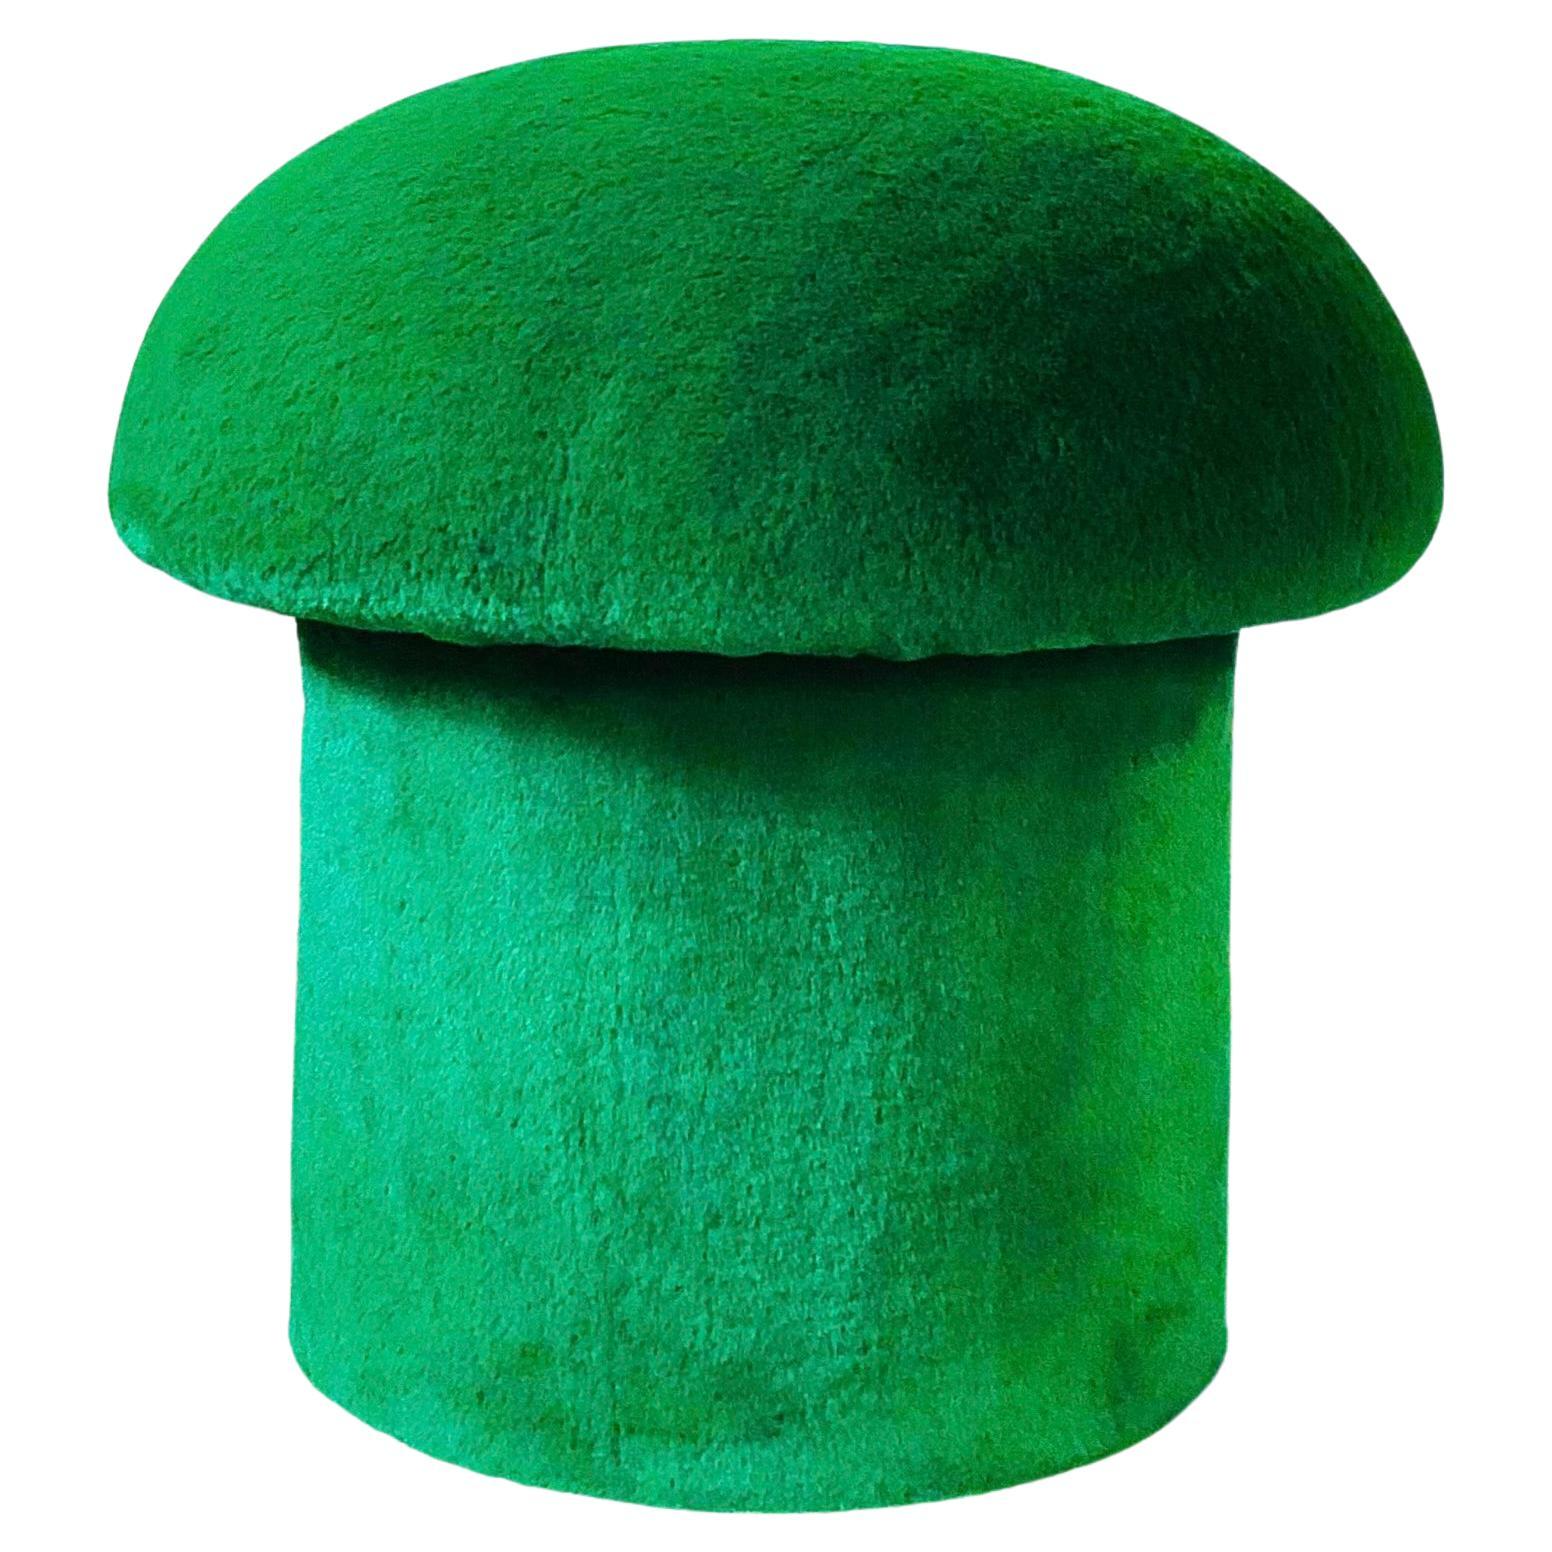 Mushroom Ottoman in Emerald Plush For Sale